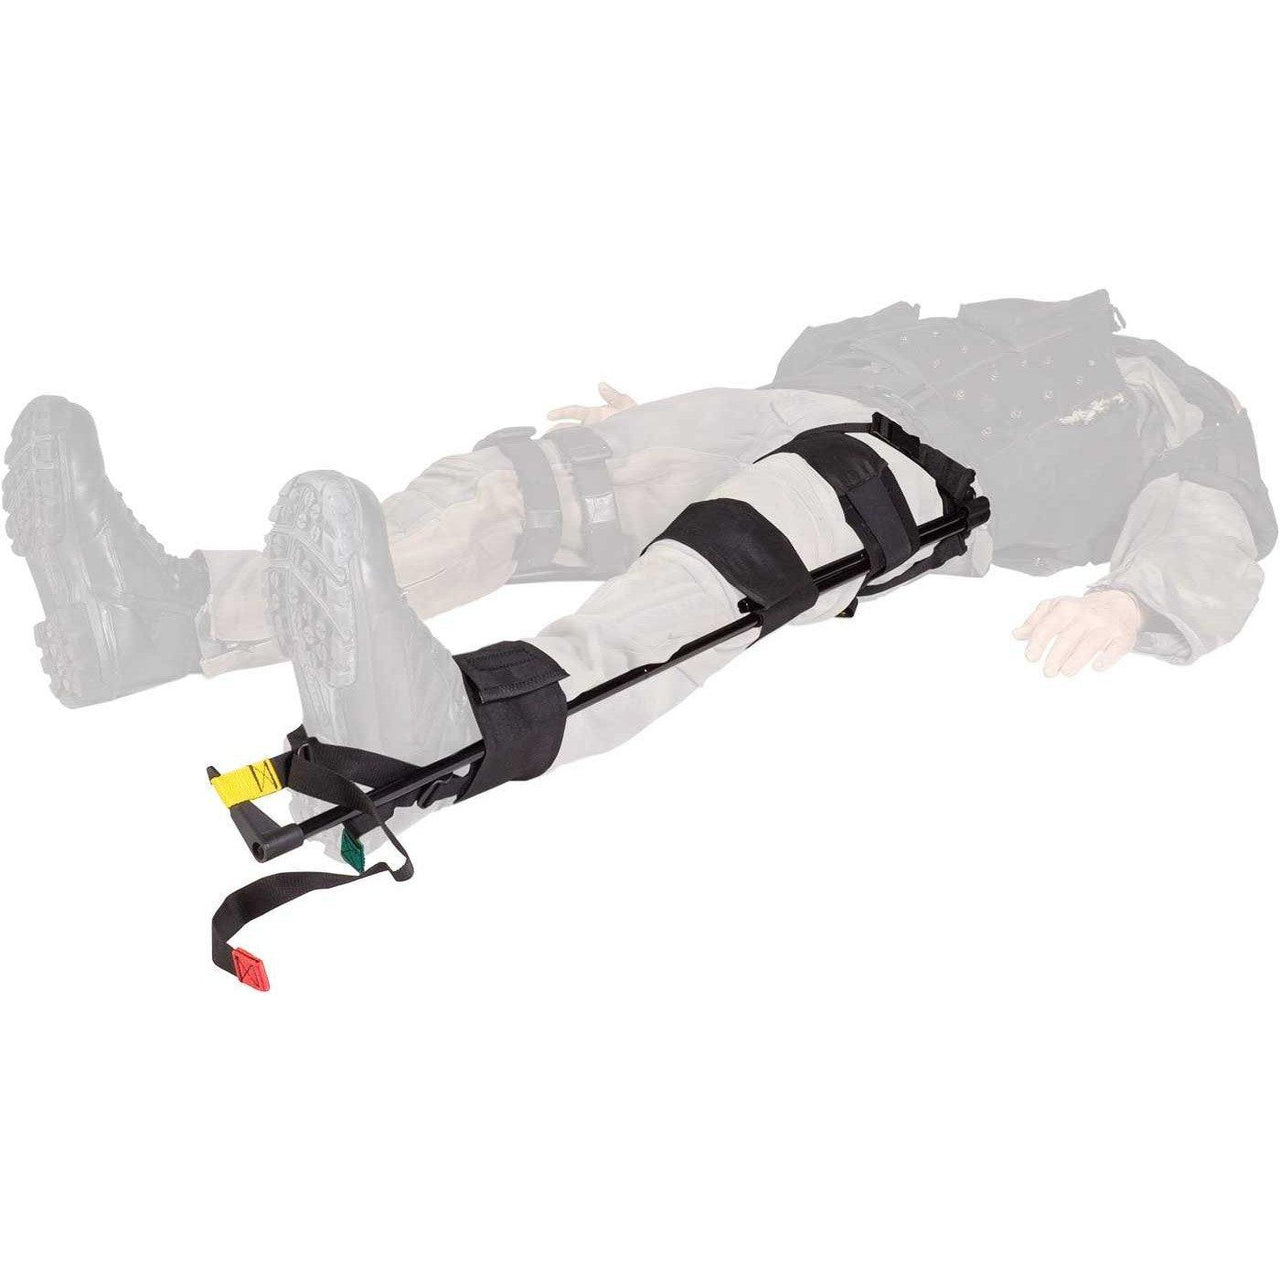 CT-6 Tactical Traction Splint - Vendor